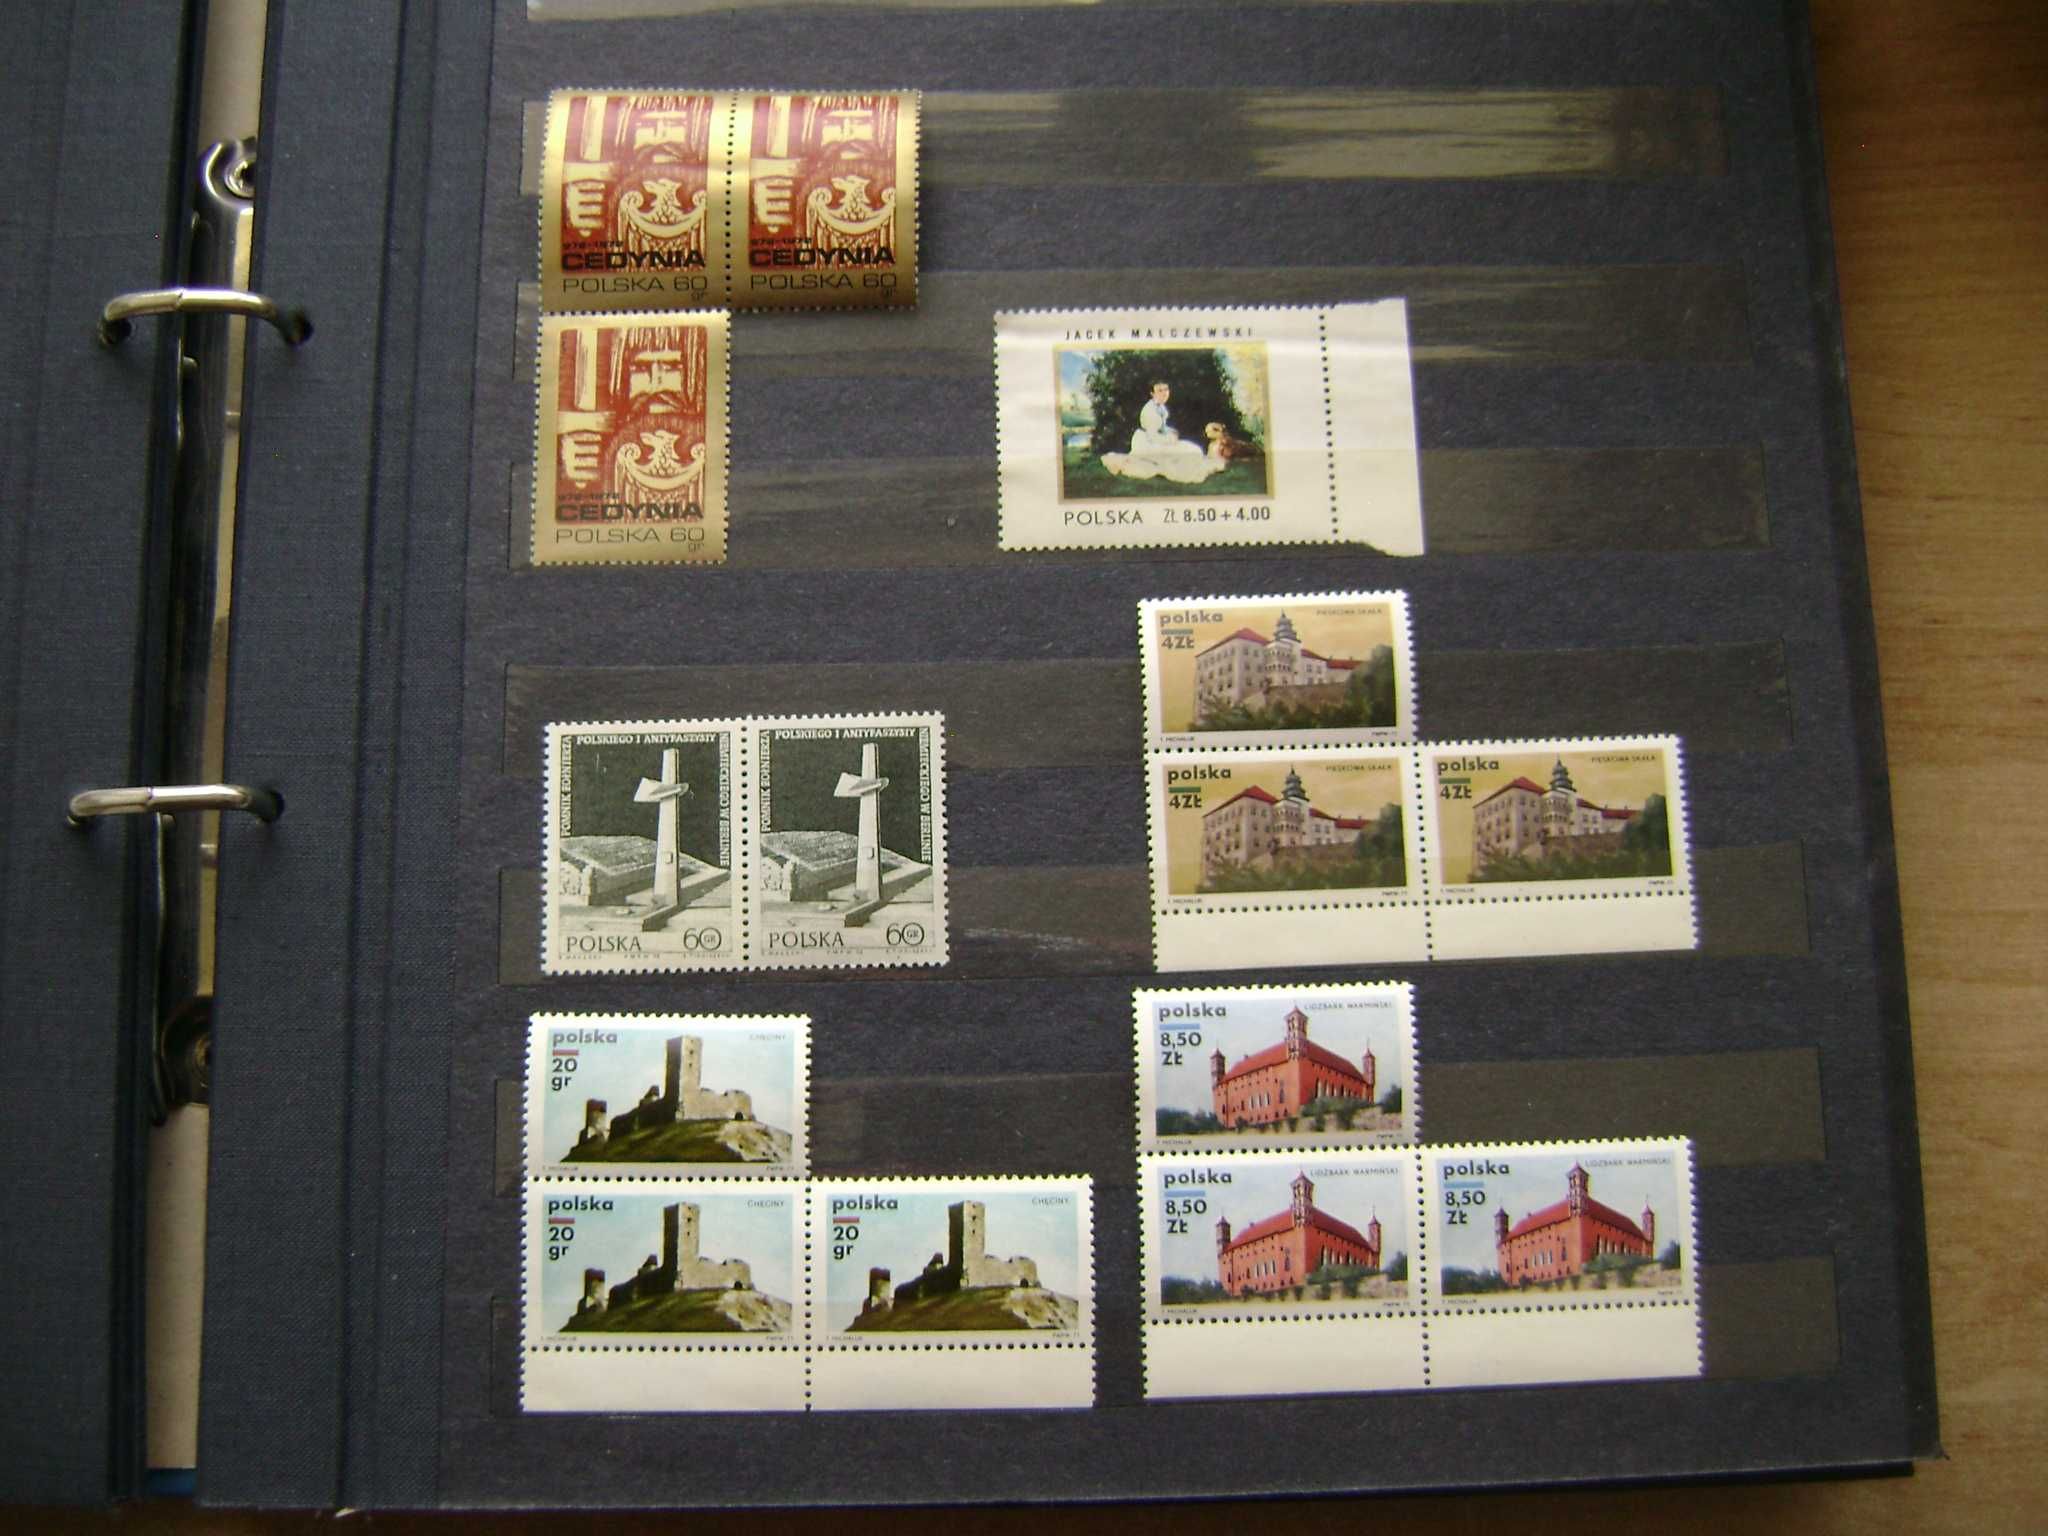 Znaczki pocztowe polskie czyste z klejem: Dwójki, Trójki, z marginesem